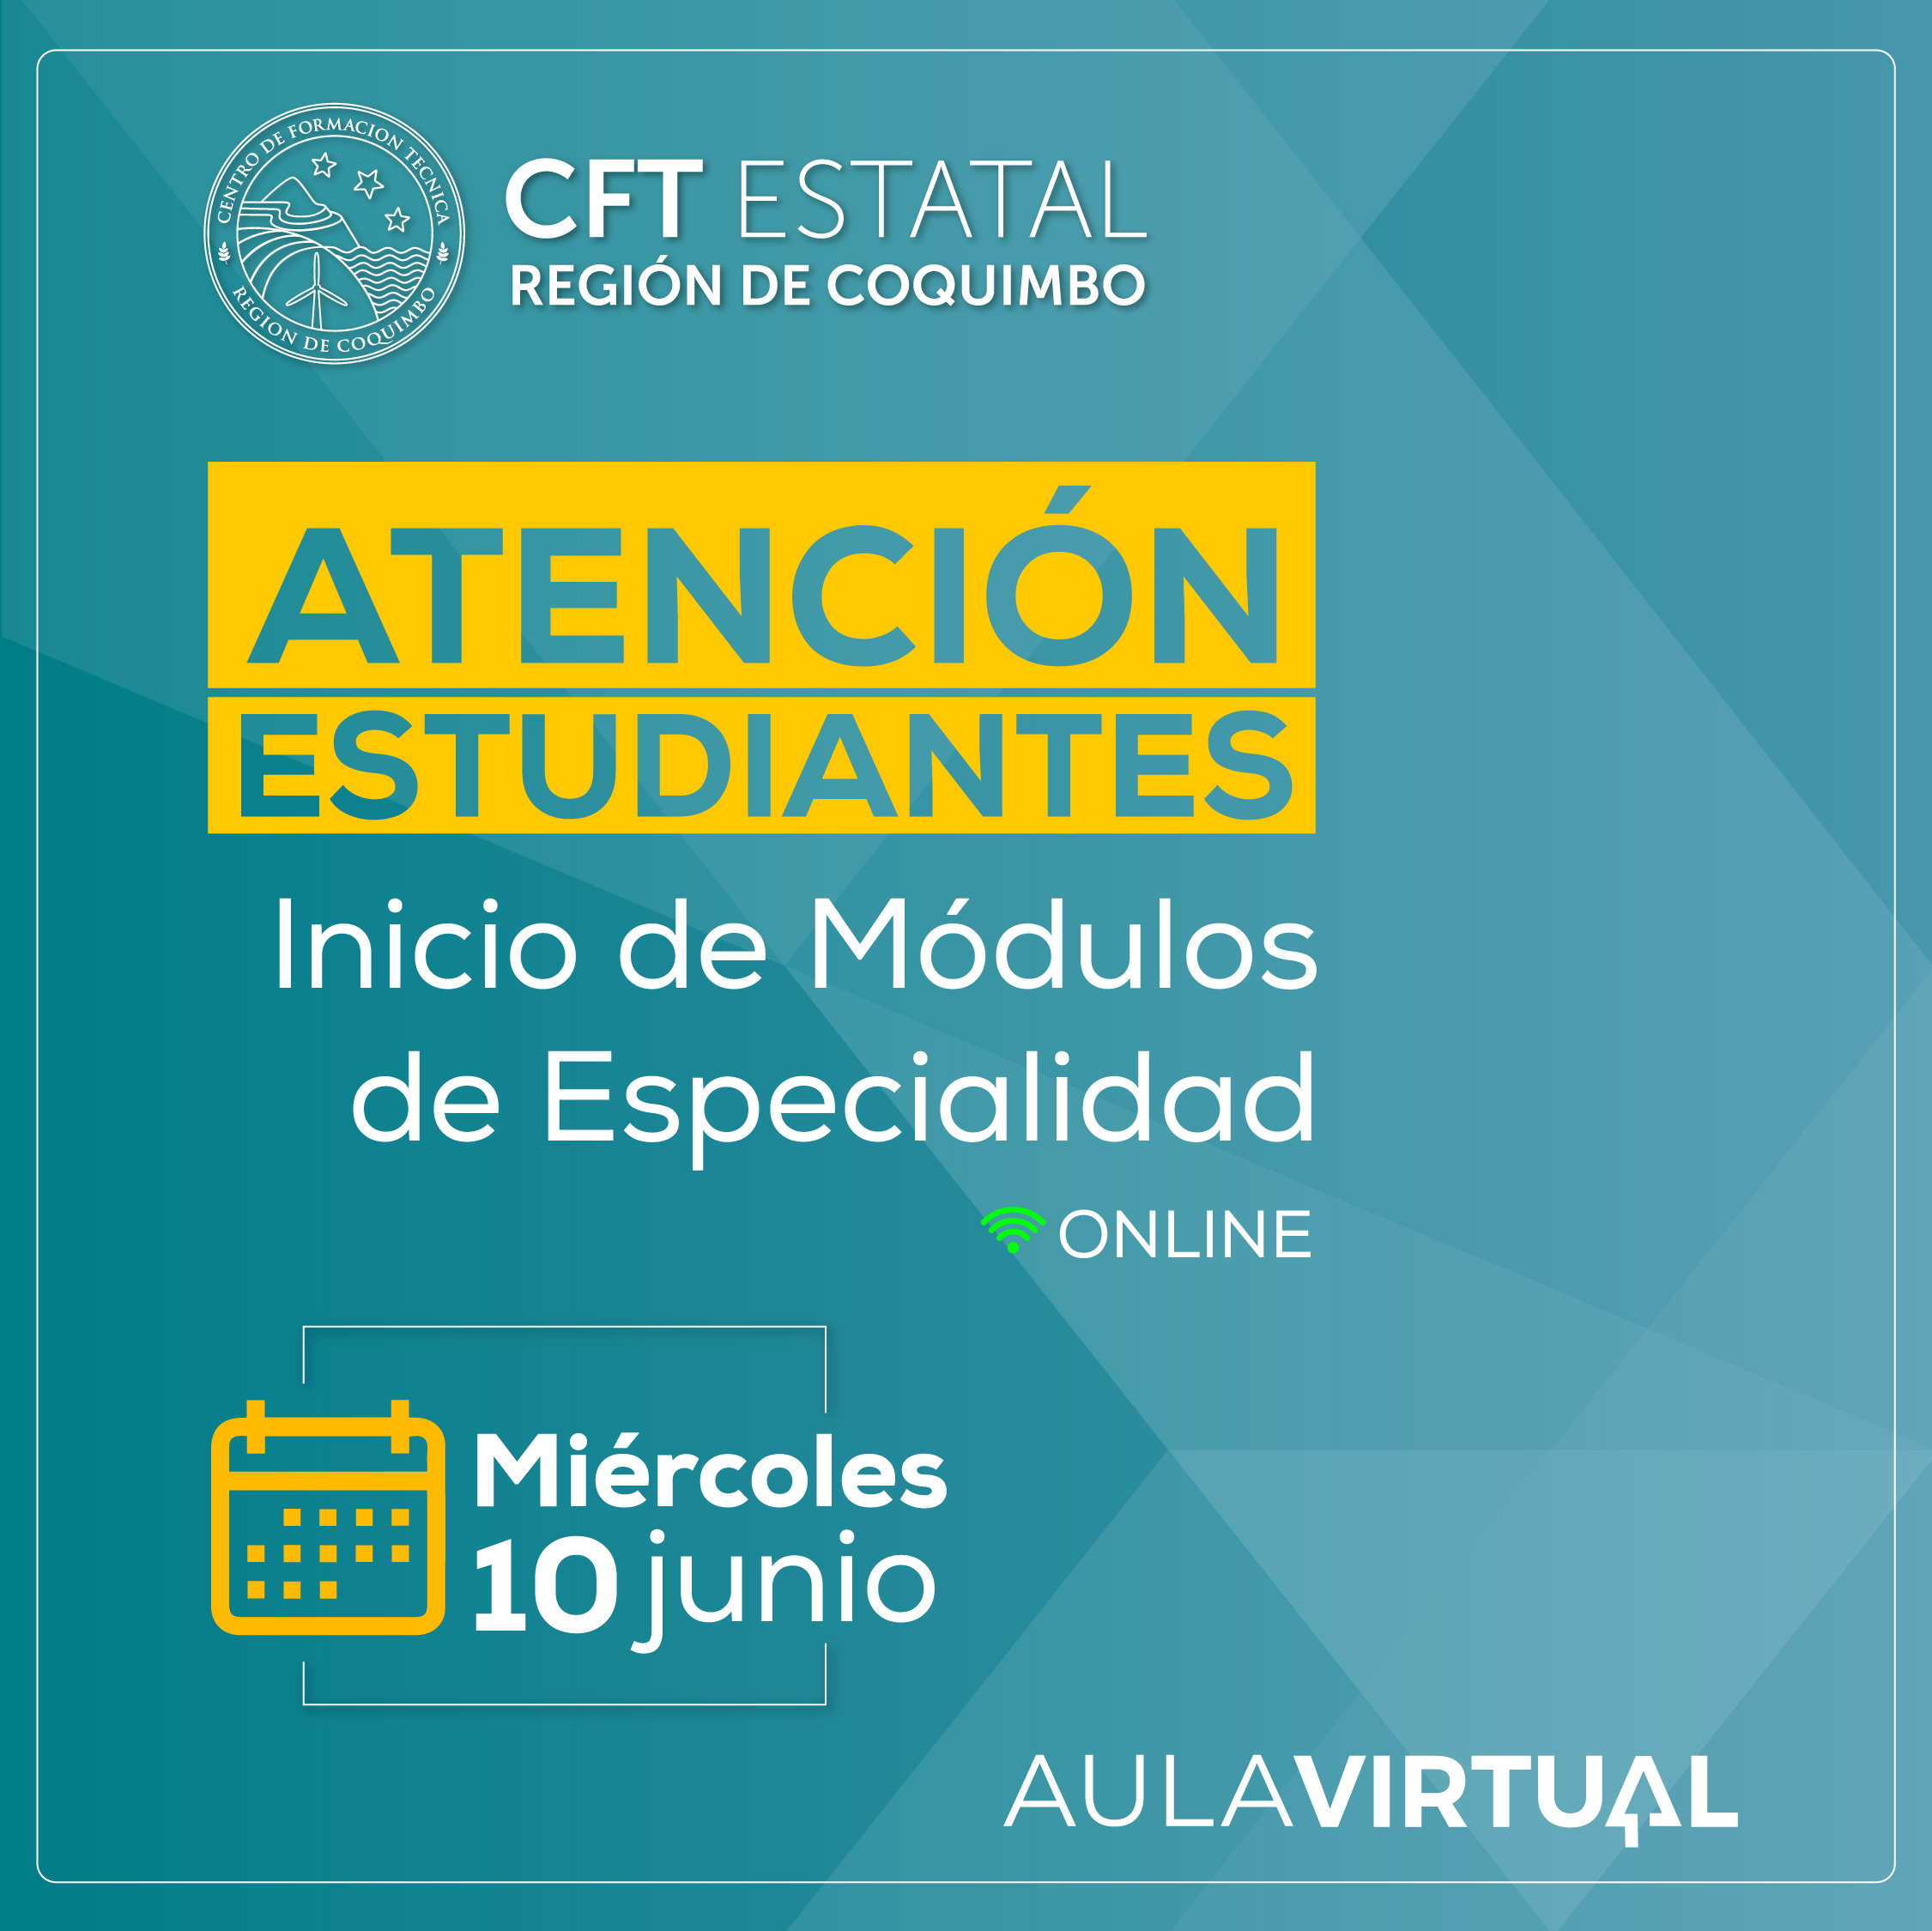 Este miércoles 10 de junio comienzan los módulos de especialidad en el CFT Estatal Región Coquimbo